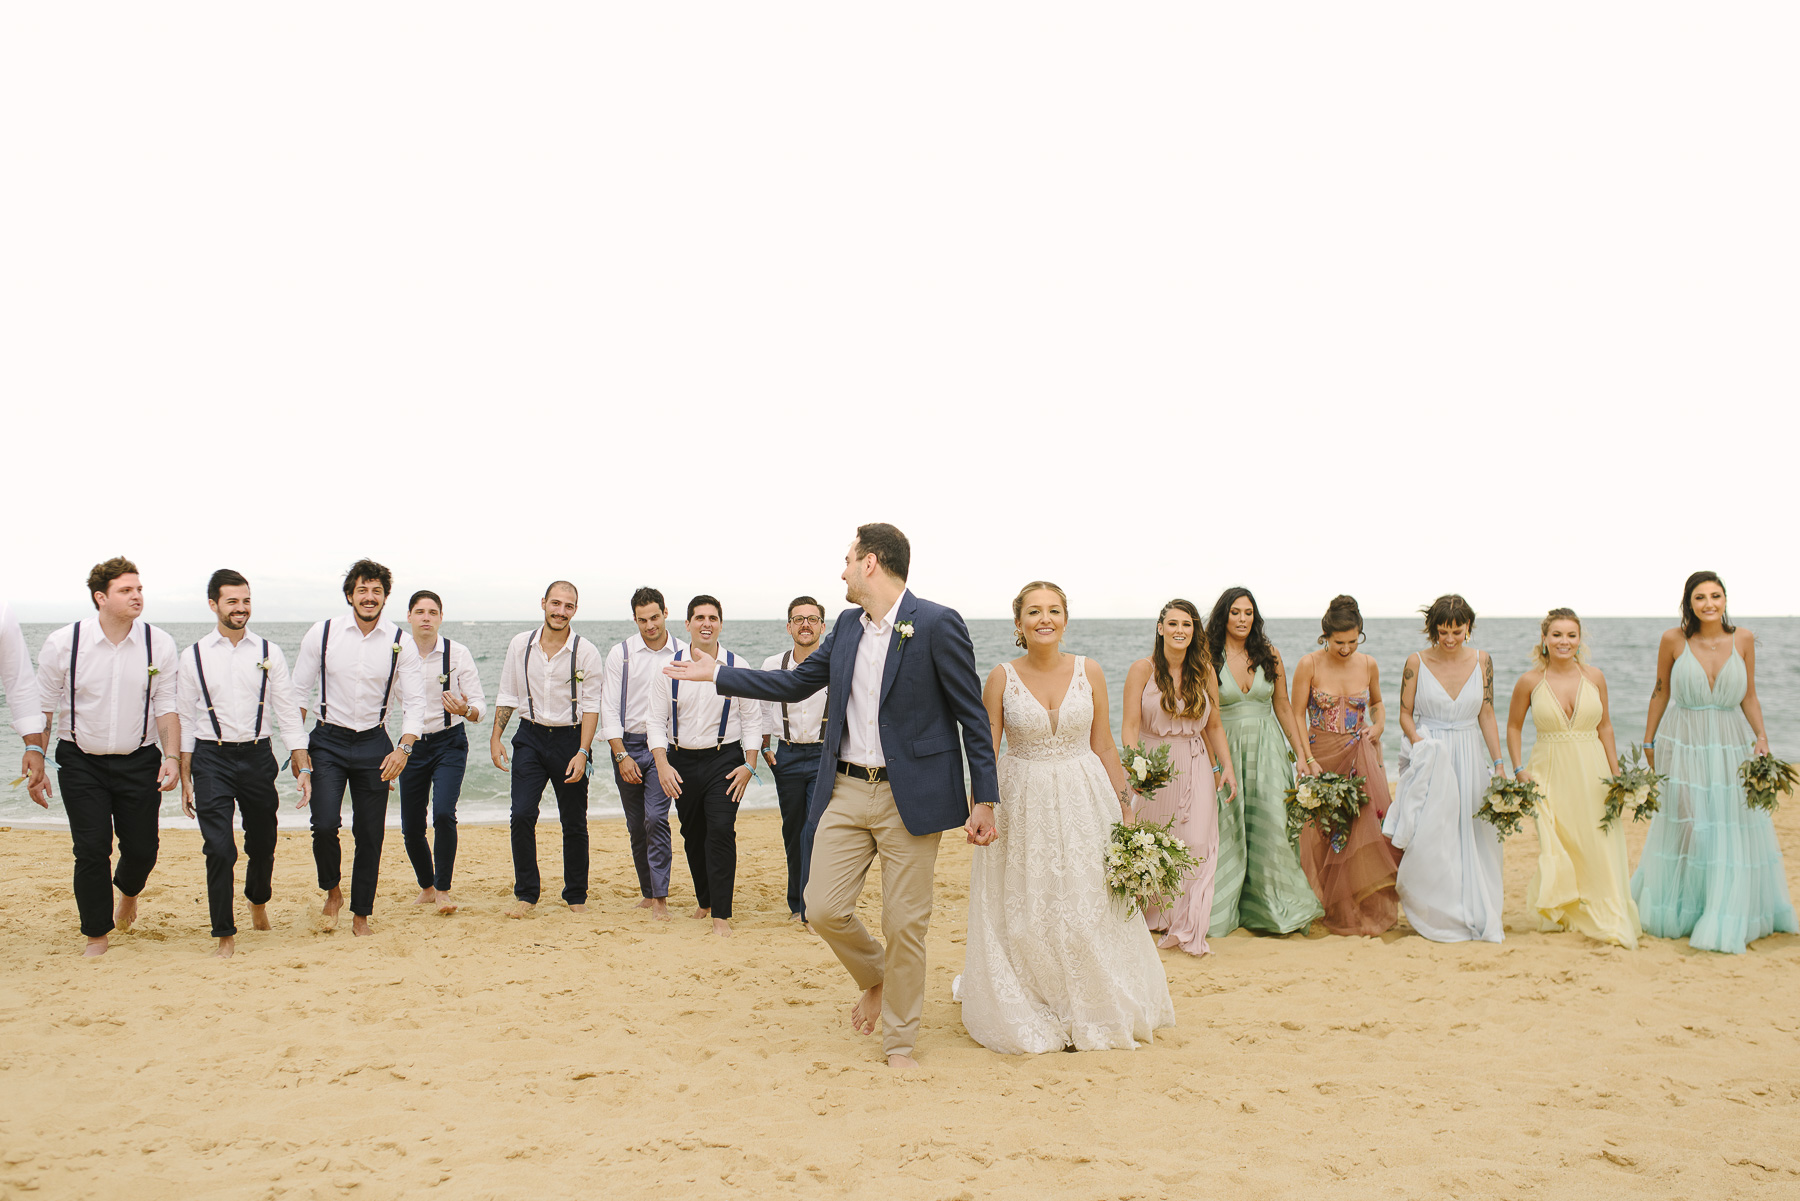 padrinhos e madrinhas de casamento andando na praia descalços